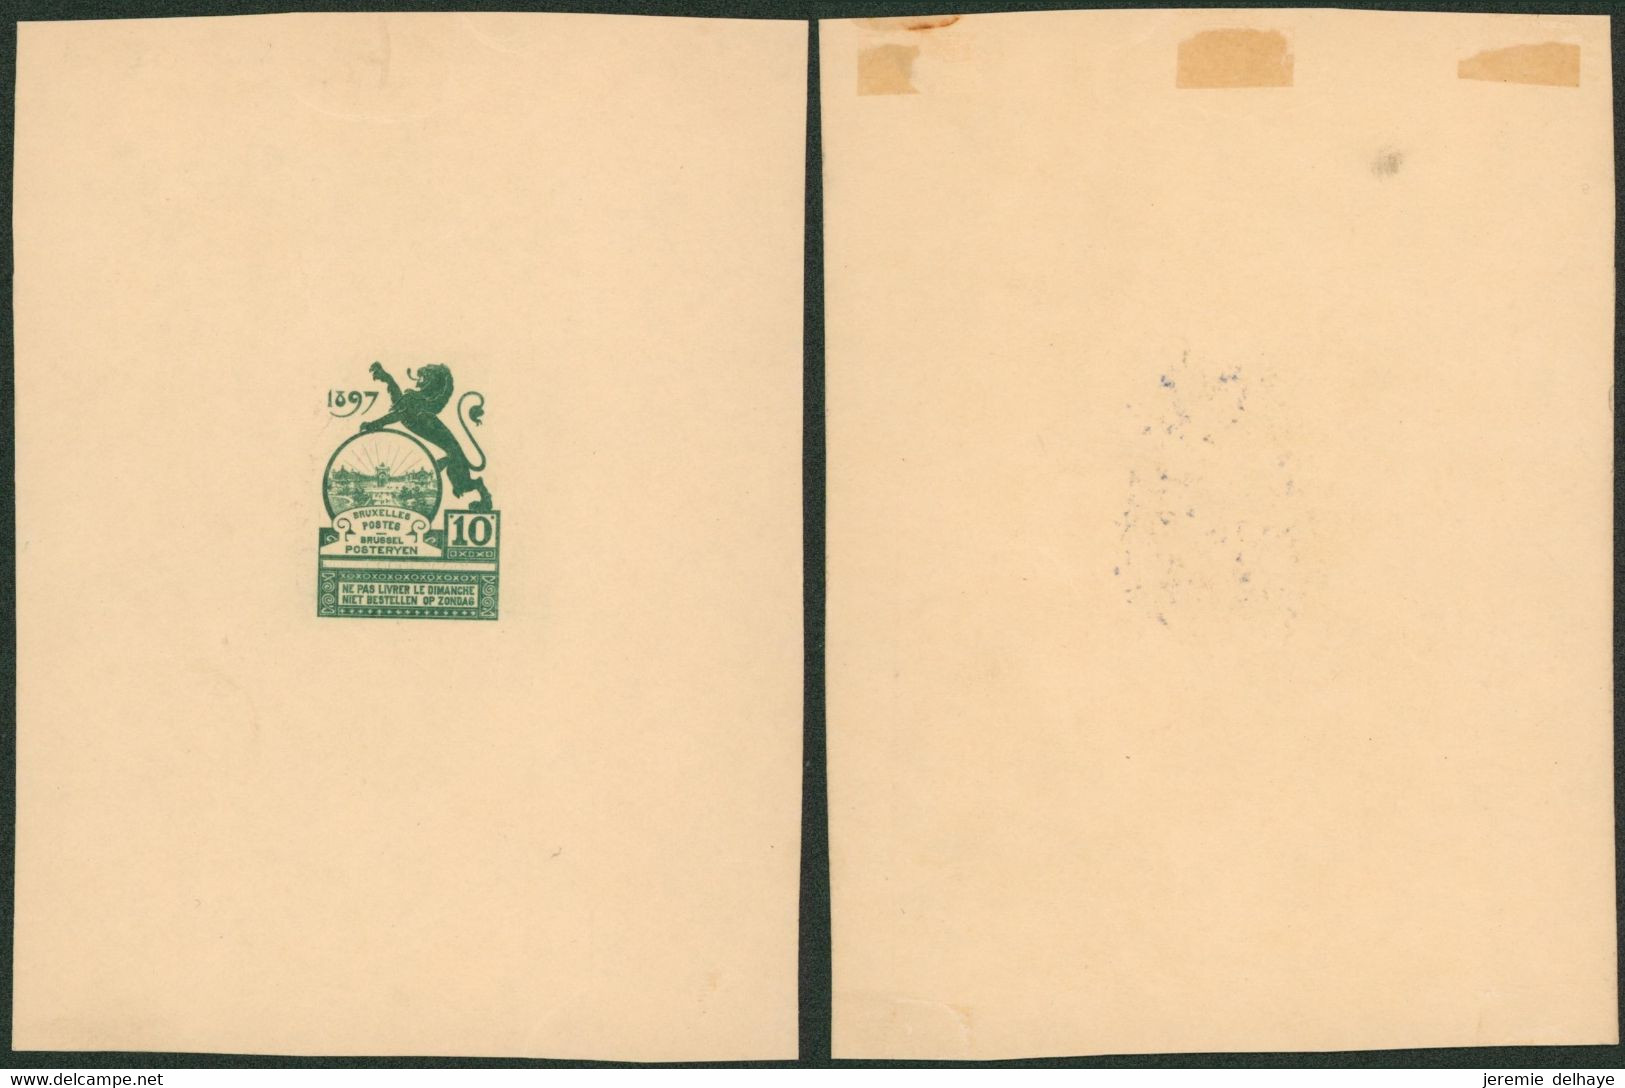 Essai - Proposition Du Peintre Louis Titz (Bruxelles Expositions 1897) Sur Papier Carton Crème (1 Couleur) : STES 2221 - Ensayos & Reimpresiones